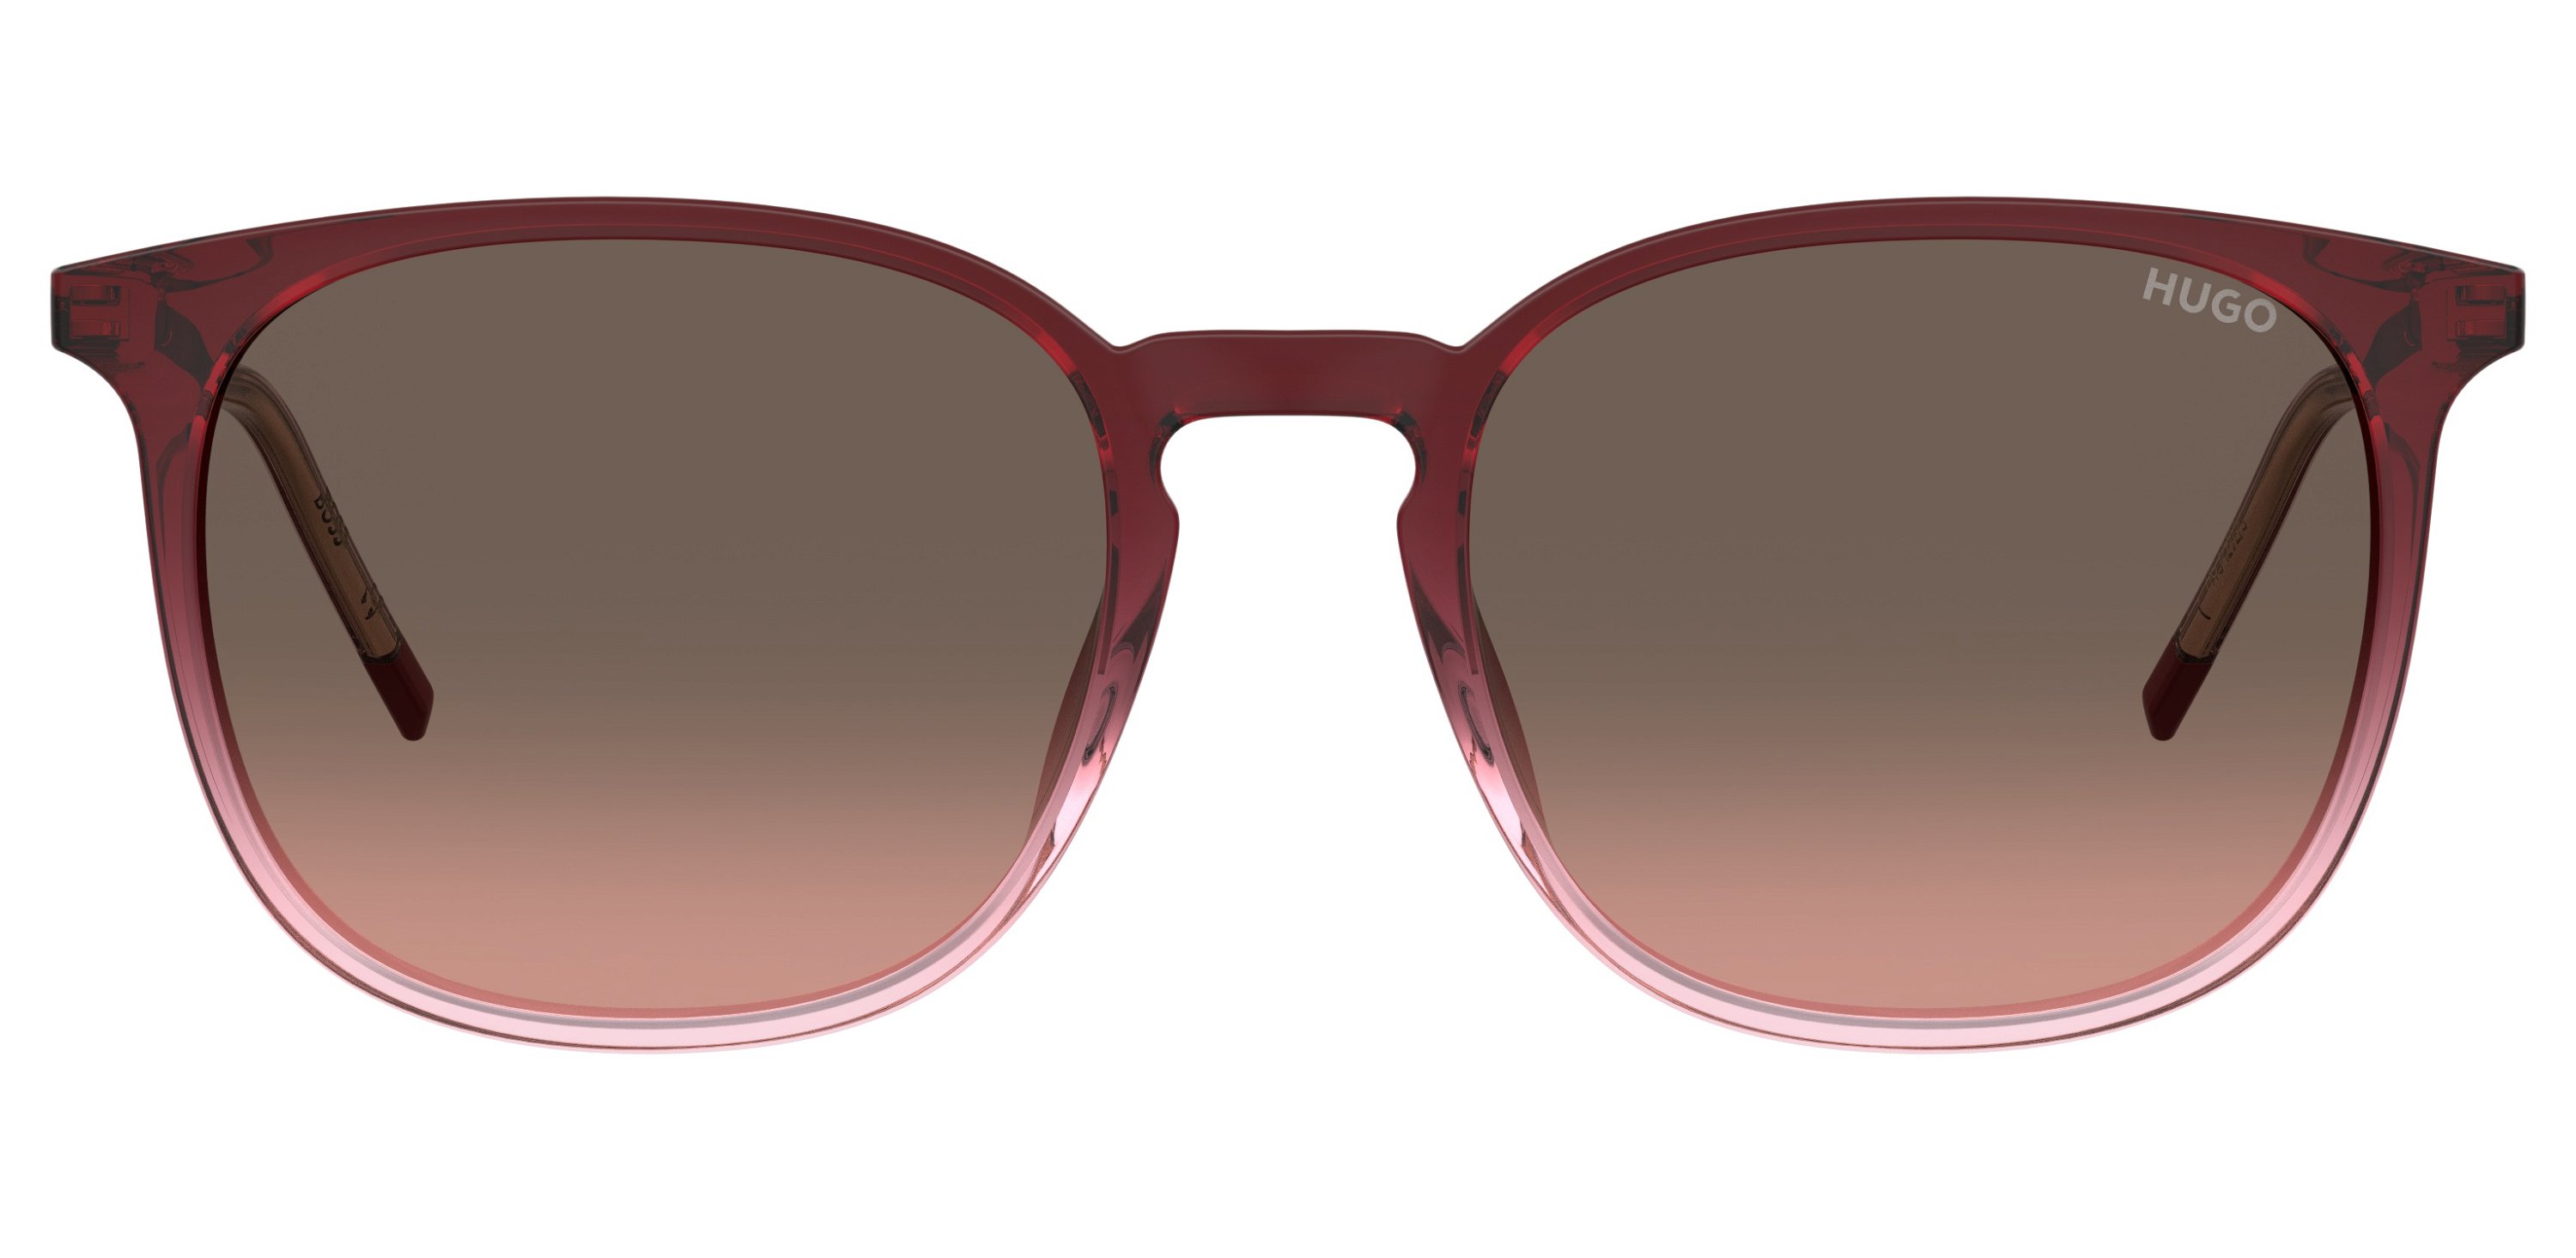 Das Bild zeigt die Sonnenbrille HG1292/S 0T5 von der Marke Hugo in rot.